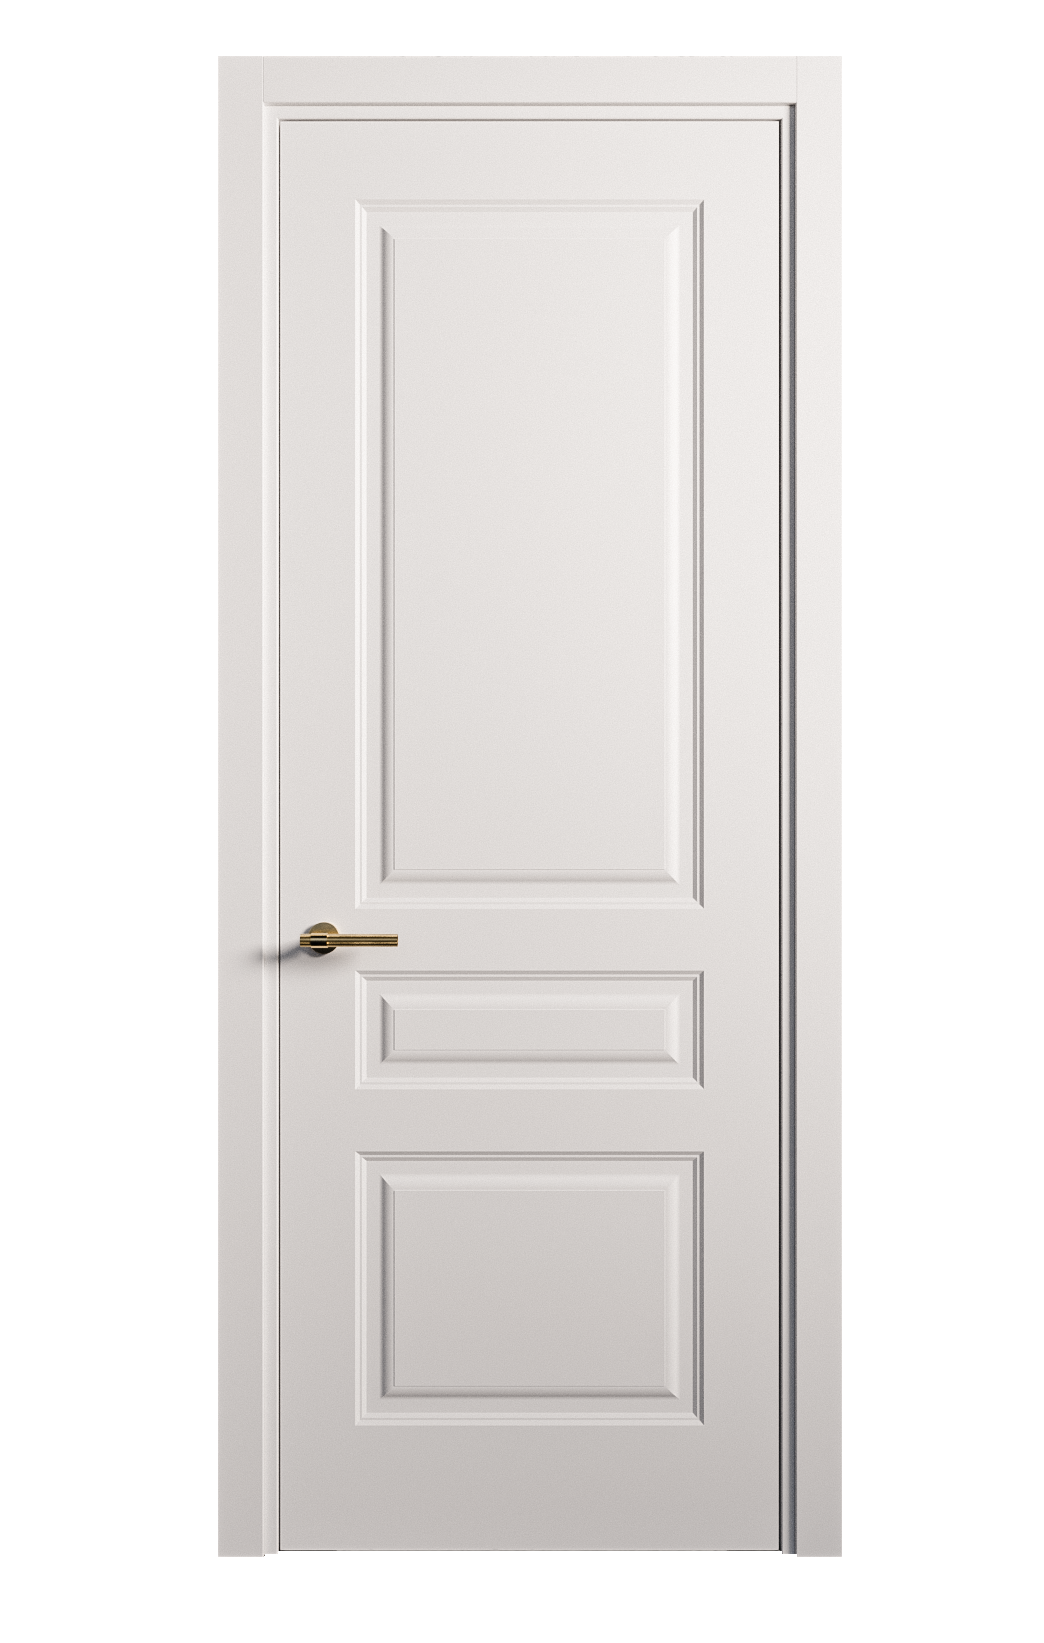 Межкомнатная дверь Вита-2 глухая эмаль ral 9003 26381